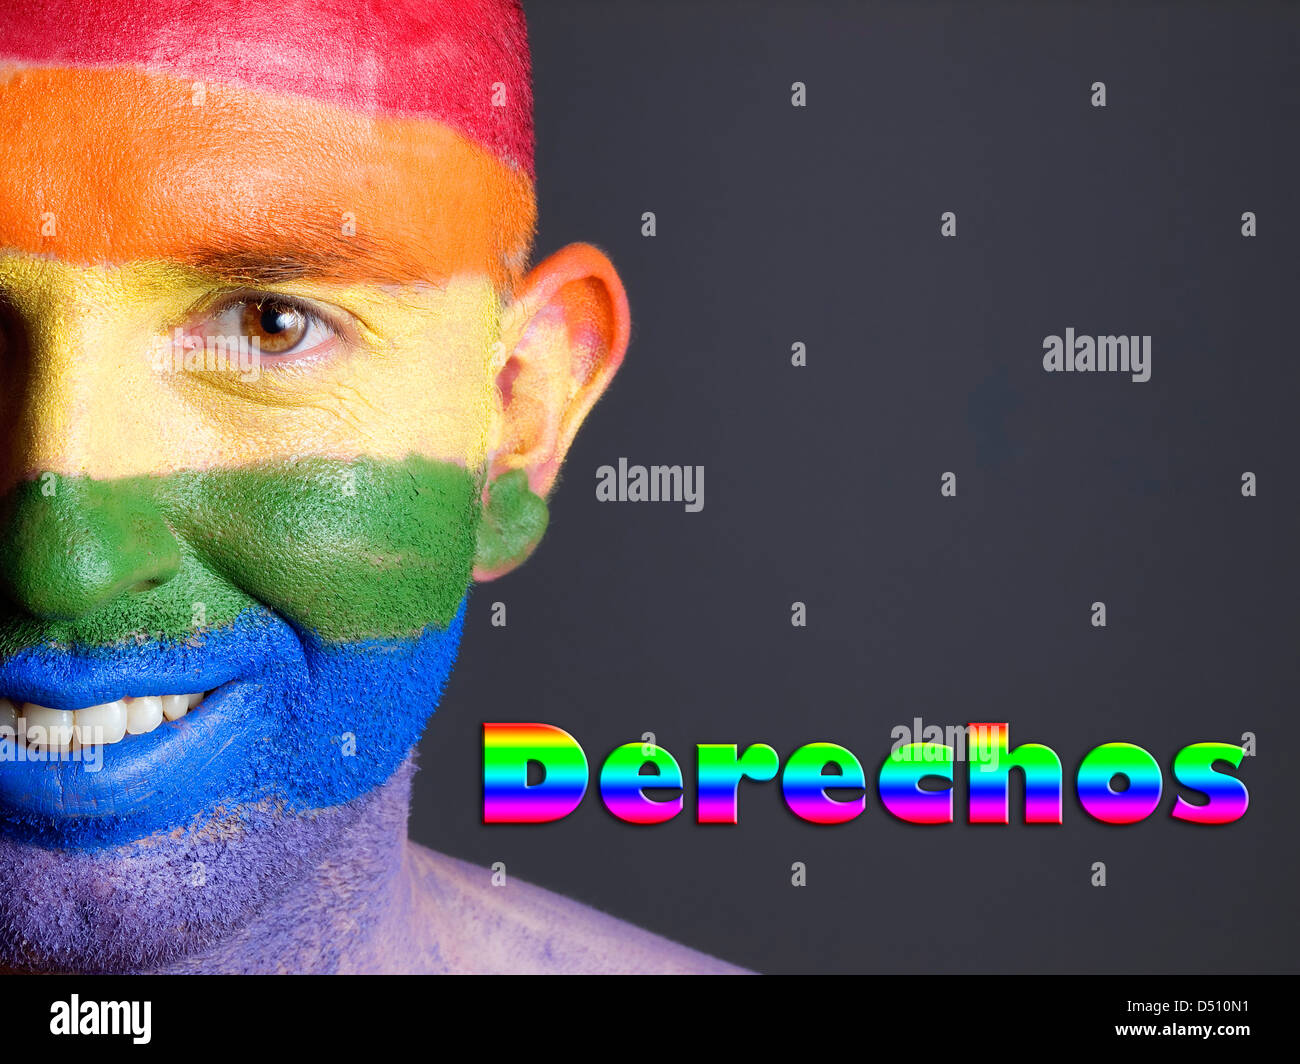 Hombre con la bandera gay pintada en la cara y sonriendo. La palabra 'derechos' esta escrita en un lado. Stock Photo